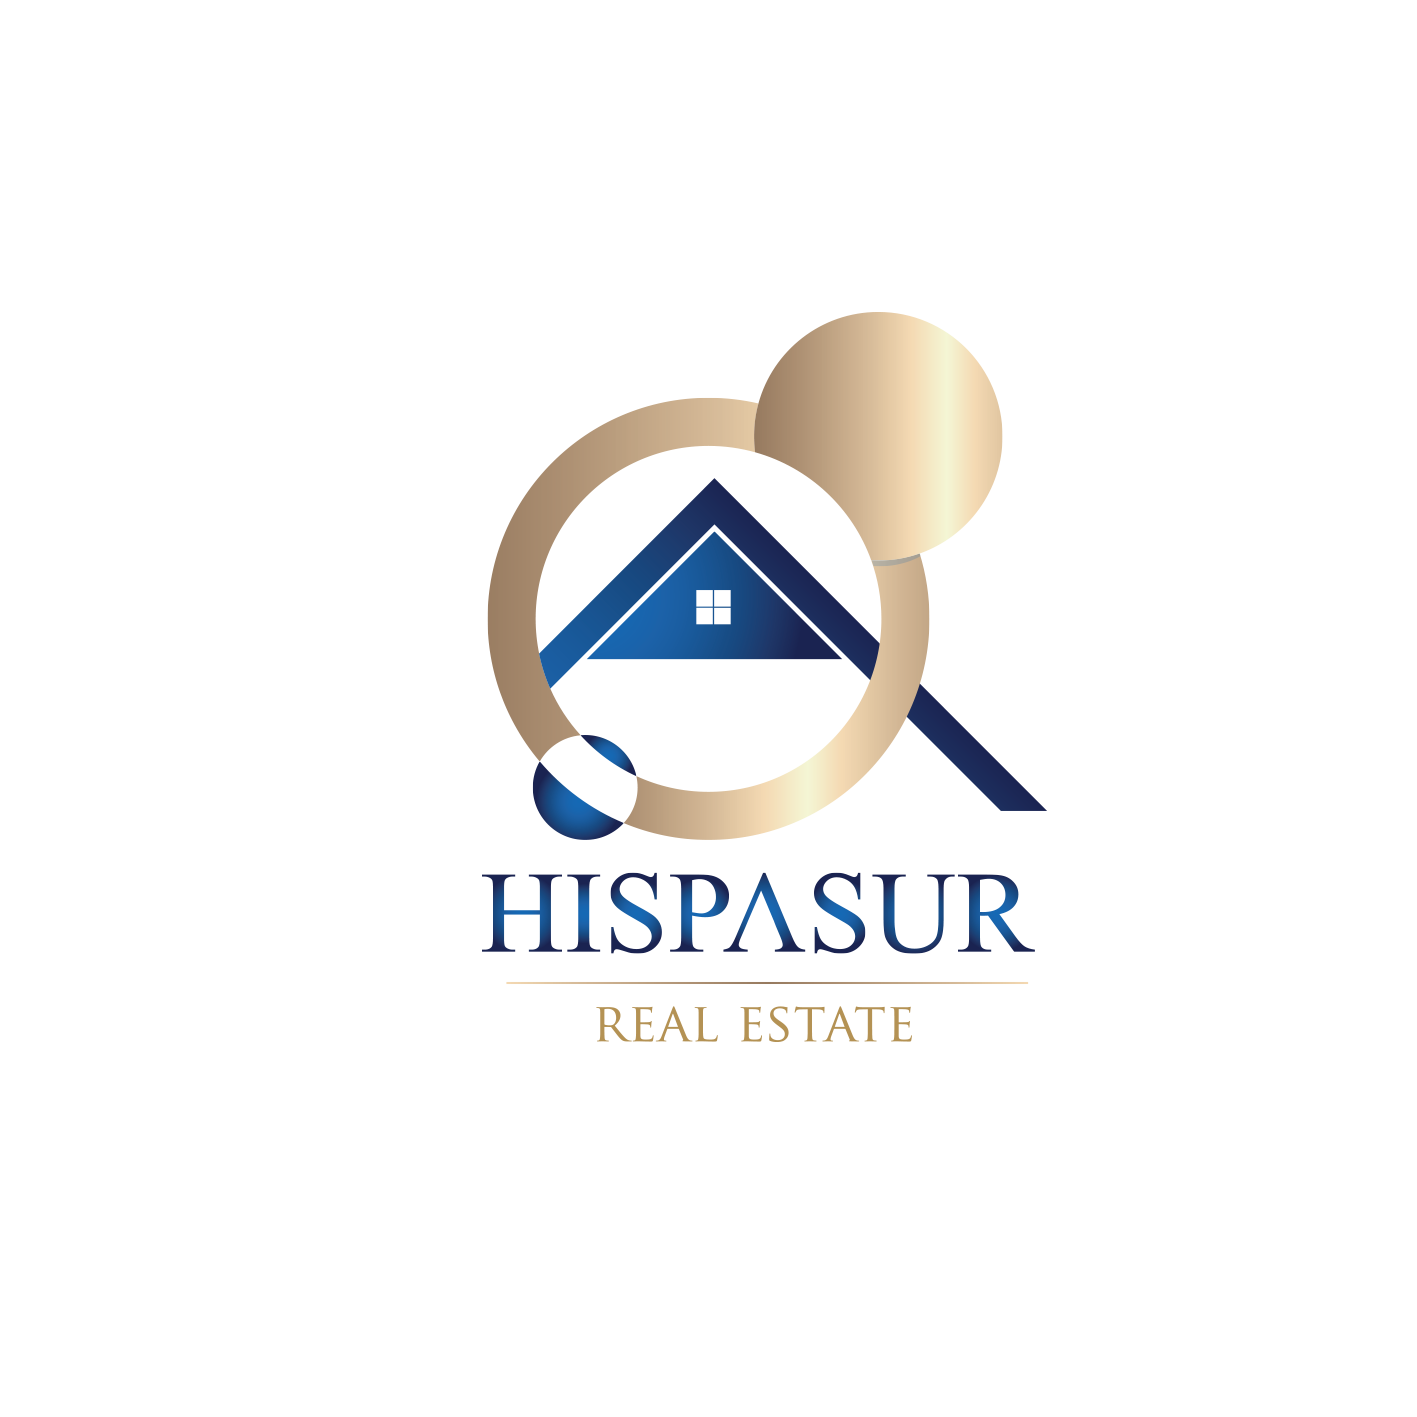 Hispasur Real Estate logo png